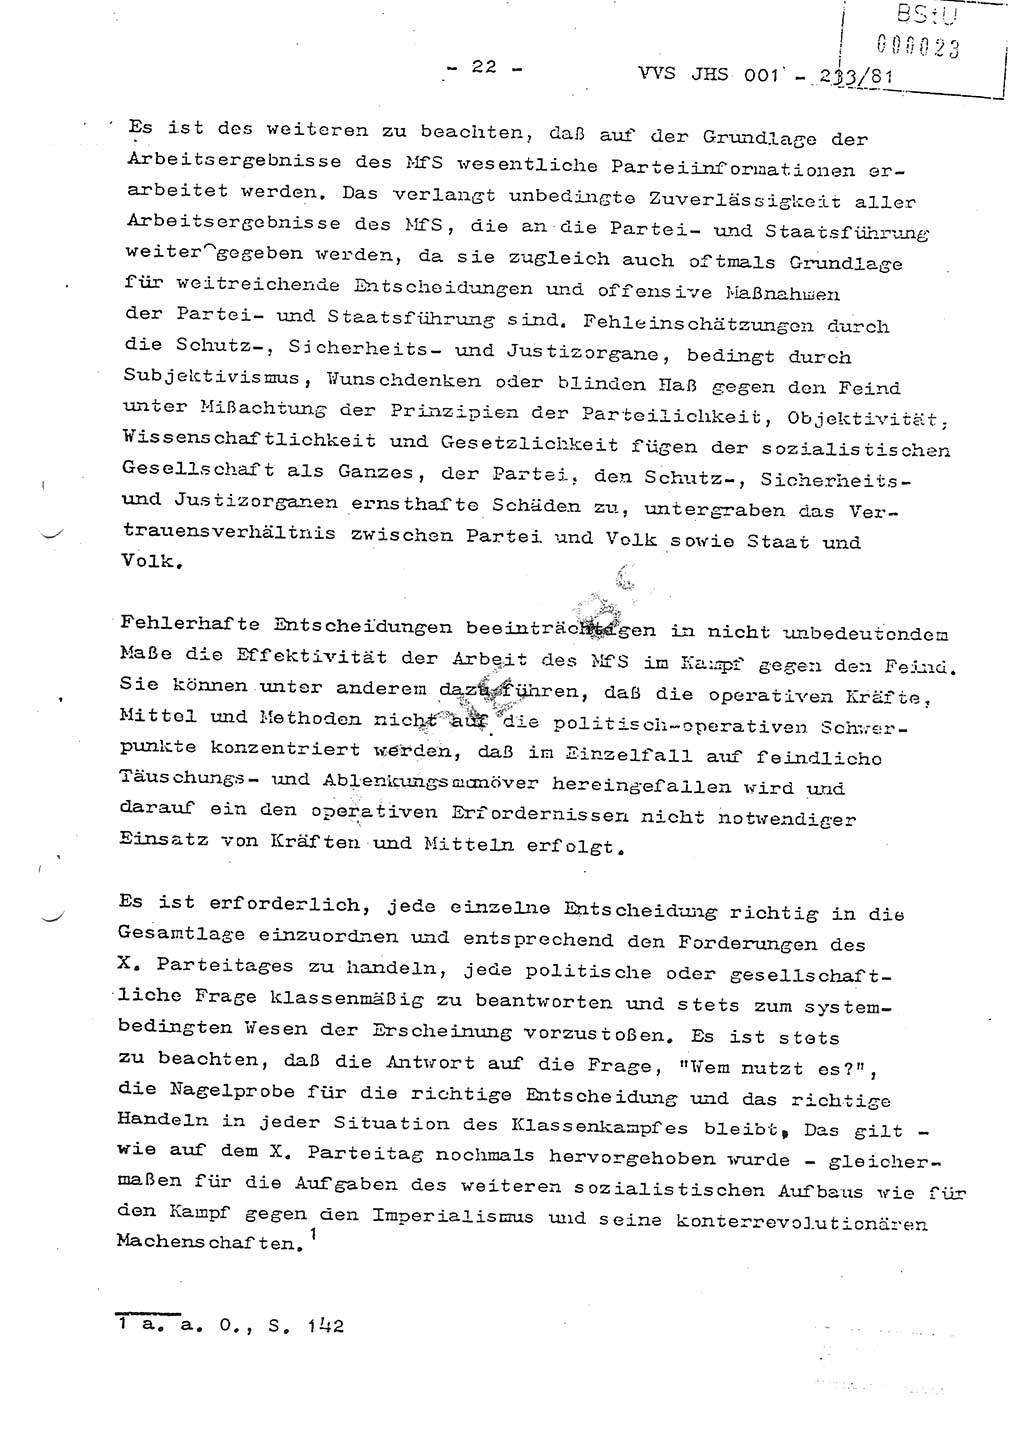 Dissertation Oberstleutnant Horst Zank (JHS), Oberstleutnant Dr. Karl-Heinz Knoblauch (JHS), Oberstleutnant Gustav-Adolf Kowalewski (HA Ⅸ), Oberstleutnant Wolfgang Plötner (HA Ⅸ), Ministerium für Staatssicherheit (MfS) [Deutsche Demokratische Republik (DDR)], Juristische Hochschule (JHS), Vertrauliche Verschlußsache (VVS) o001-233/81, Potsdam 1981, Blatt 23 (Diss. MfS DDR JHS VVS o001-233/81 1981, Bl. 23)